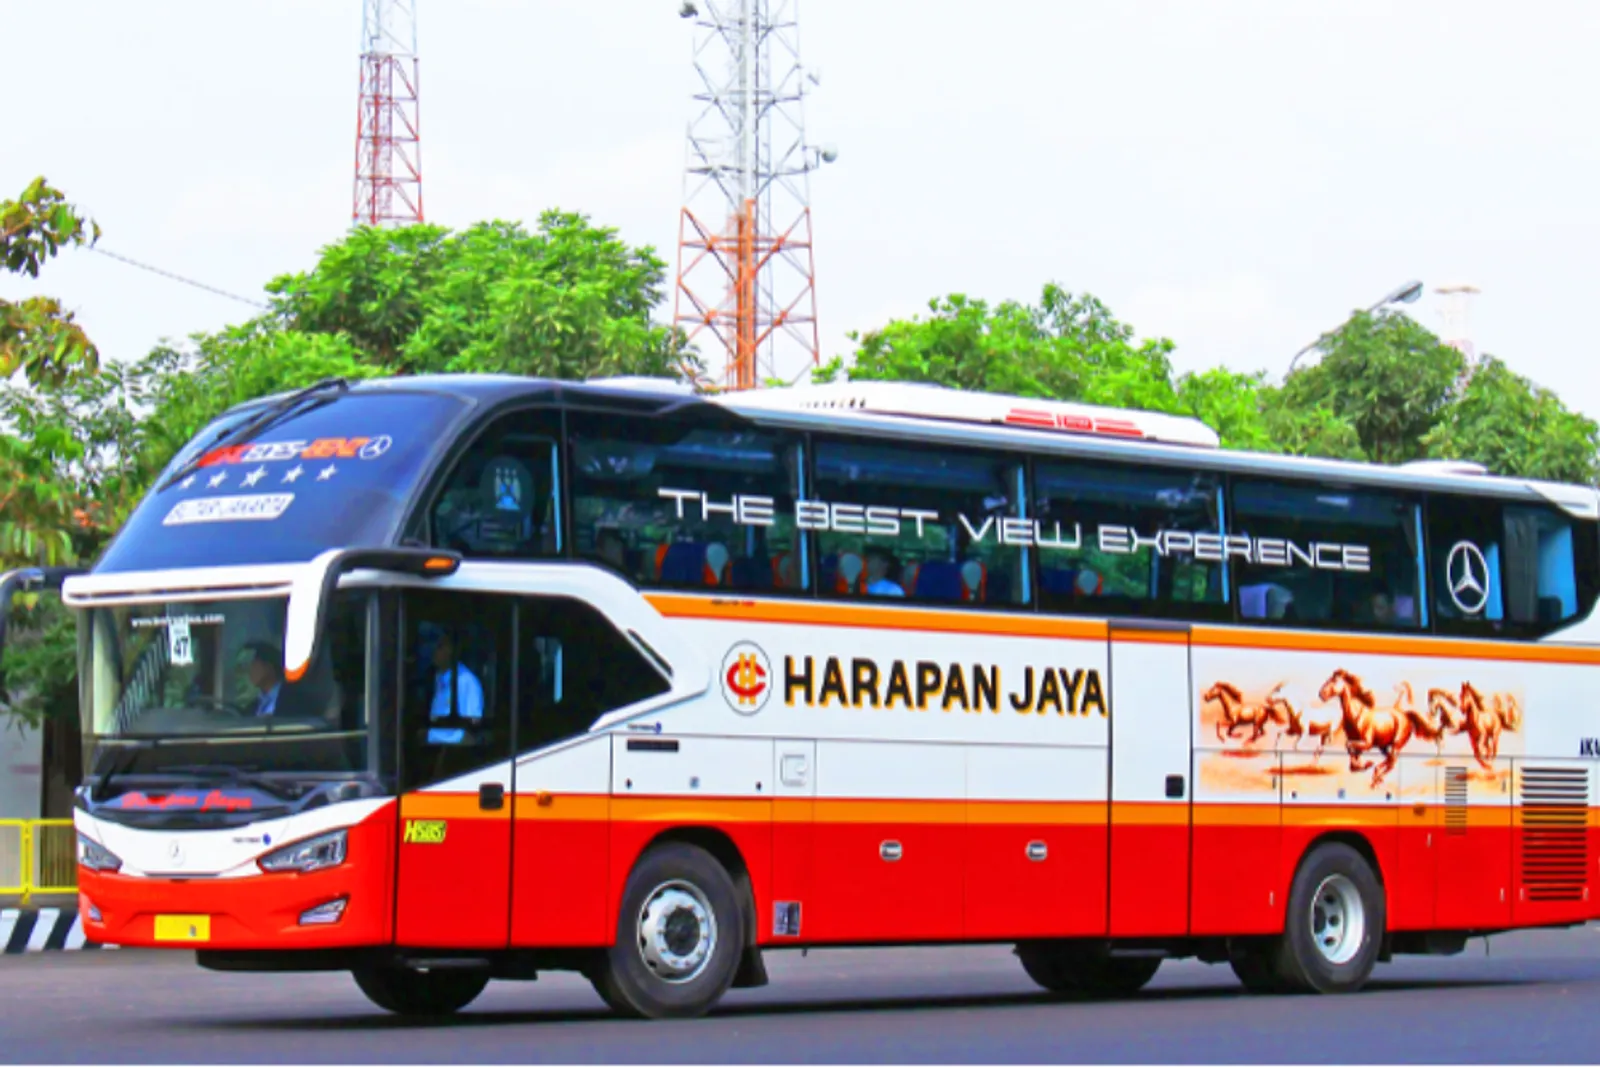 5 Sleeper Bus di Indonesia yang Nyaman, Mewah, dan Fasilitas Lengkap